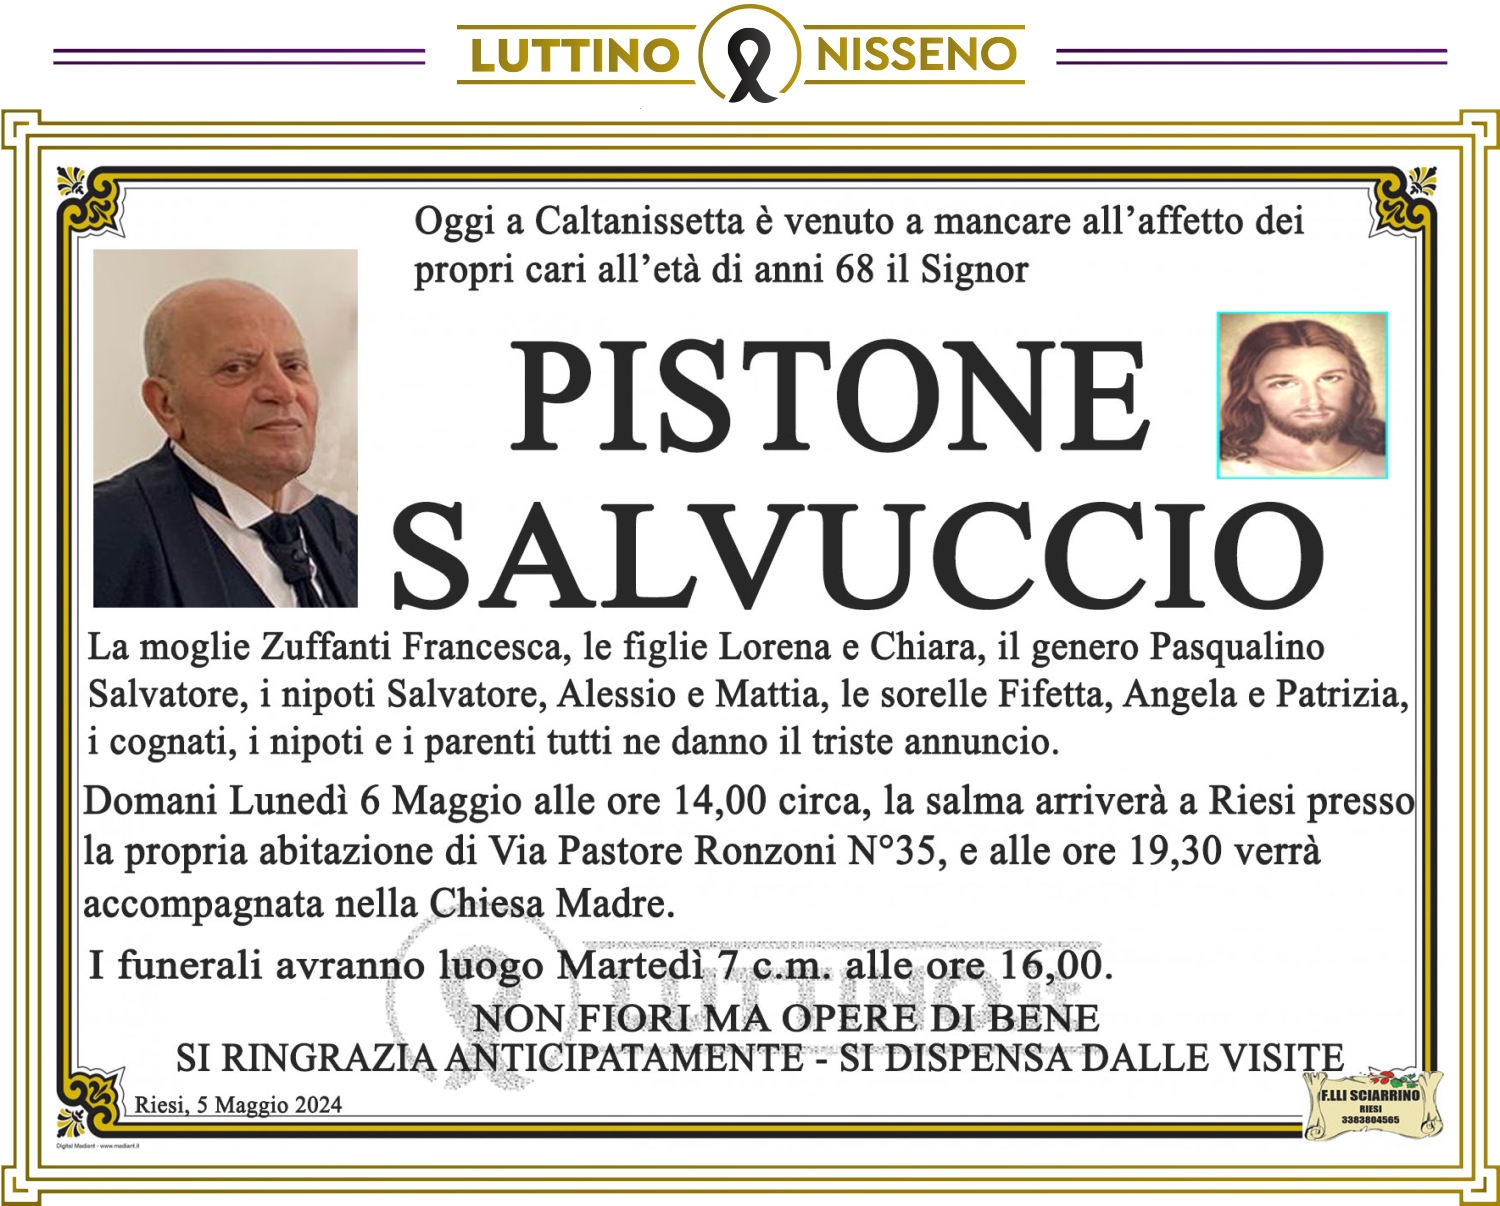 Salvuccio Pistone